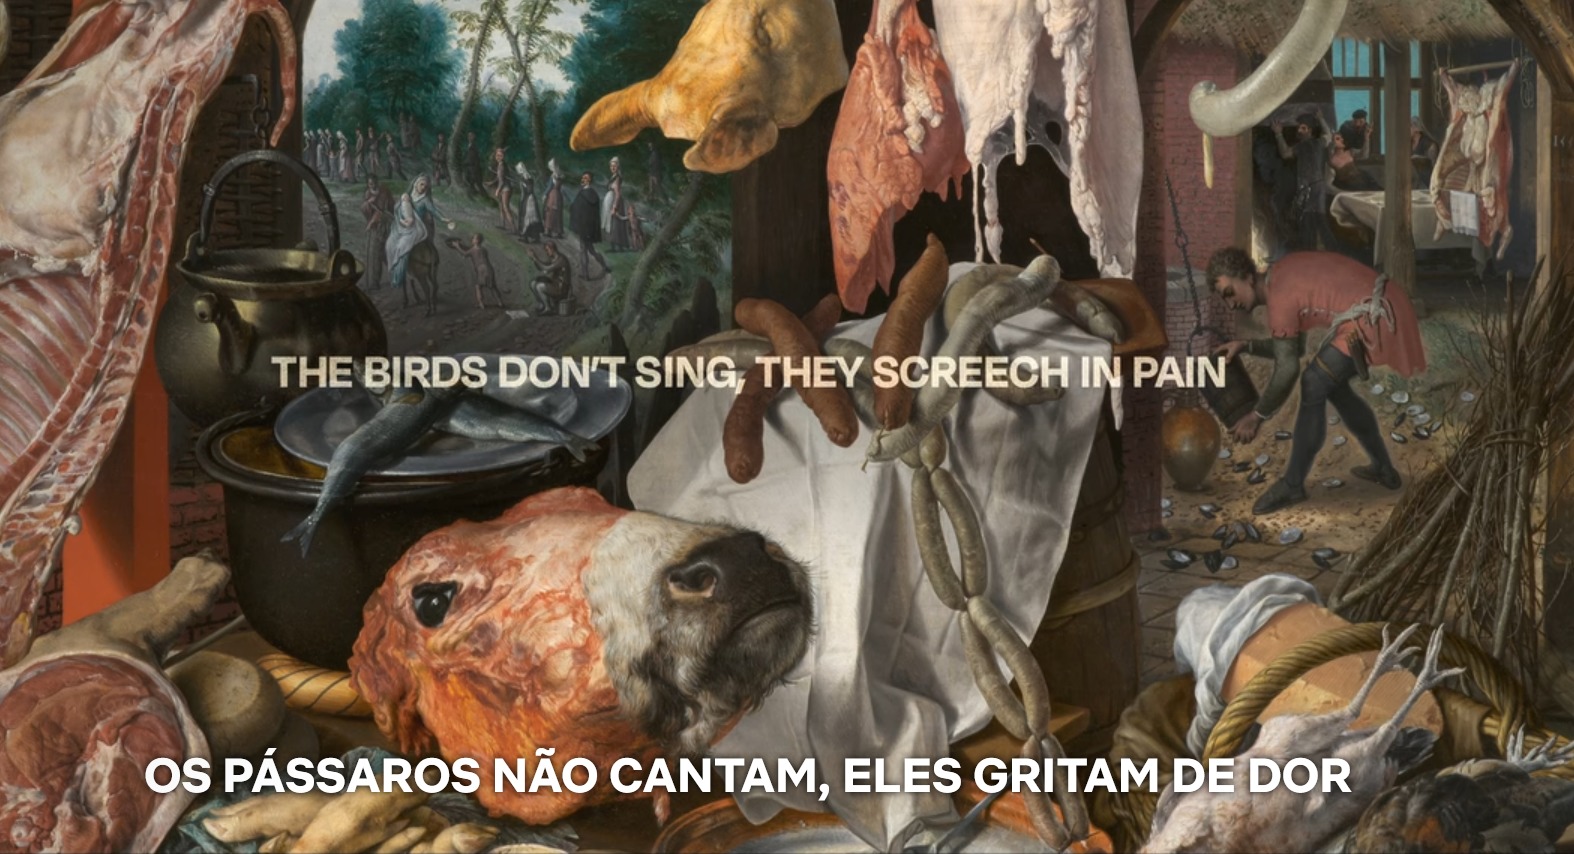 Pintura realista de carcaças de vaca e cortes de carne, com o título em branco: "The Birds Don’t Sing, They Screech in Pain", com a legenda em português "Os pássaros não cantam, eles gritam de dor"